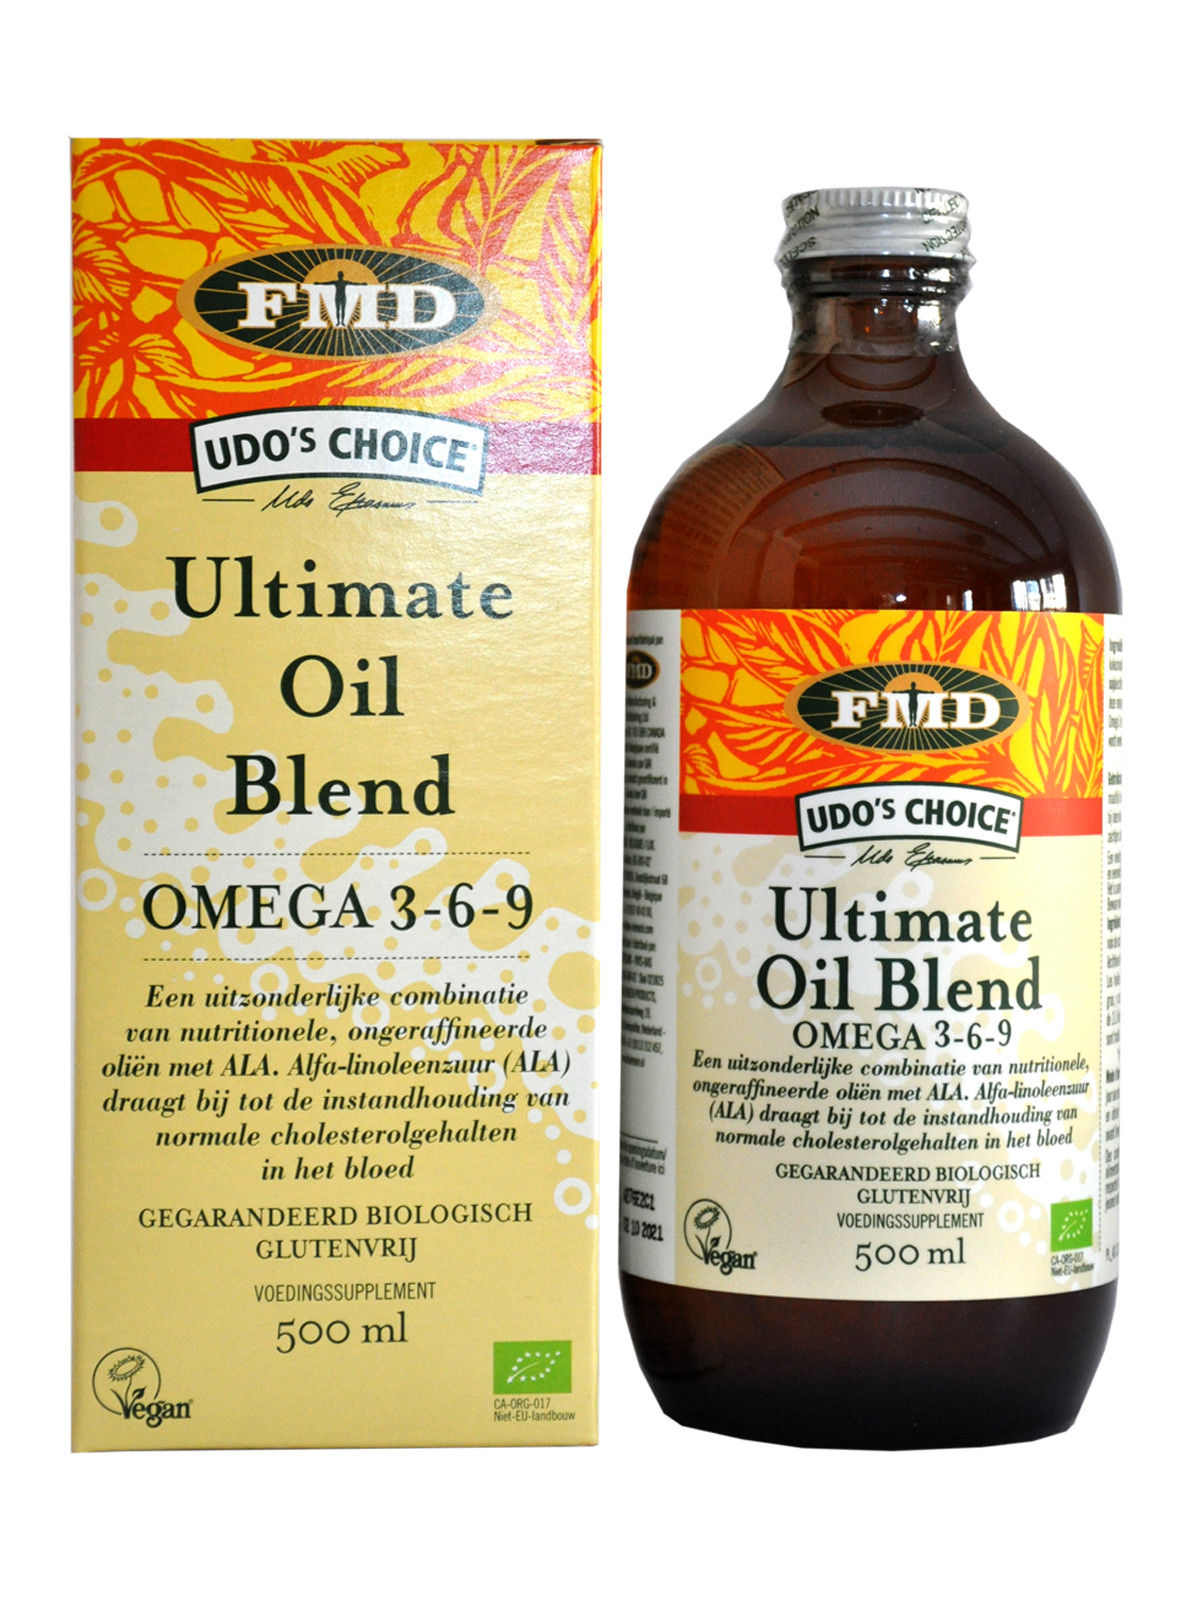 FMD Ultimate Oil Blend 500 ml